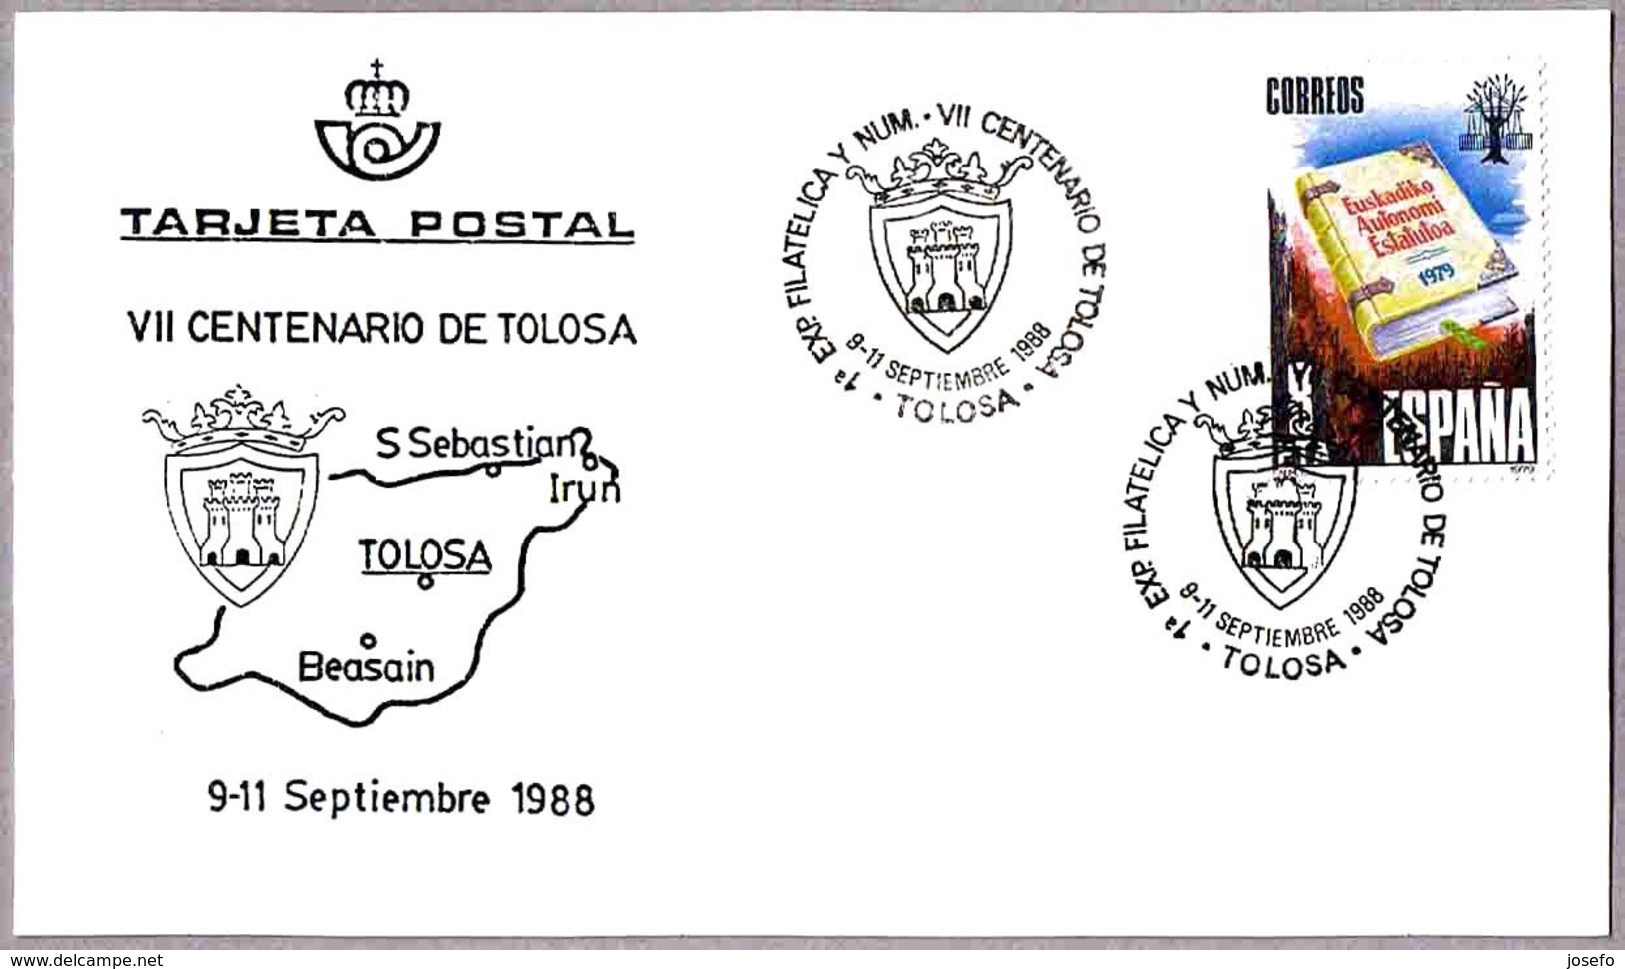 VII CENTENARIO DE TOLOSA. ESCUDO - COAT OF ARMS. Tolosa, Guipuzcoa, 1988 - Sobres